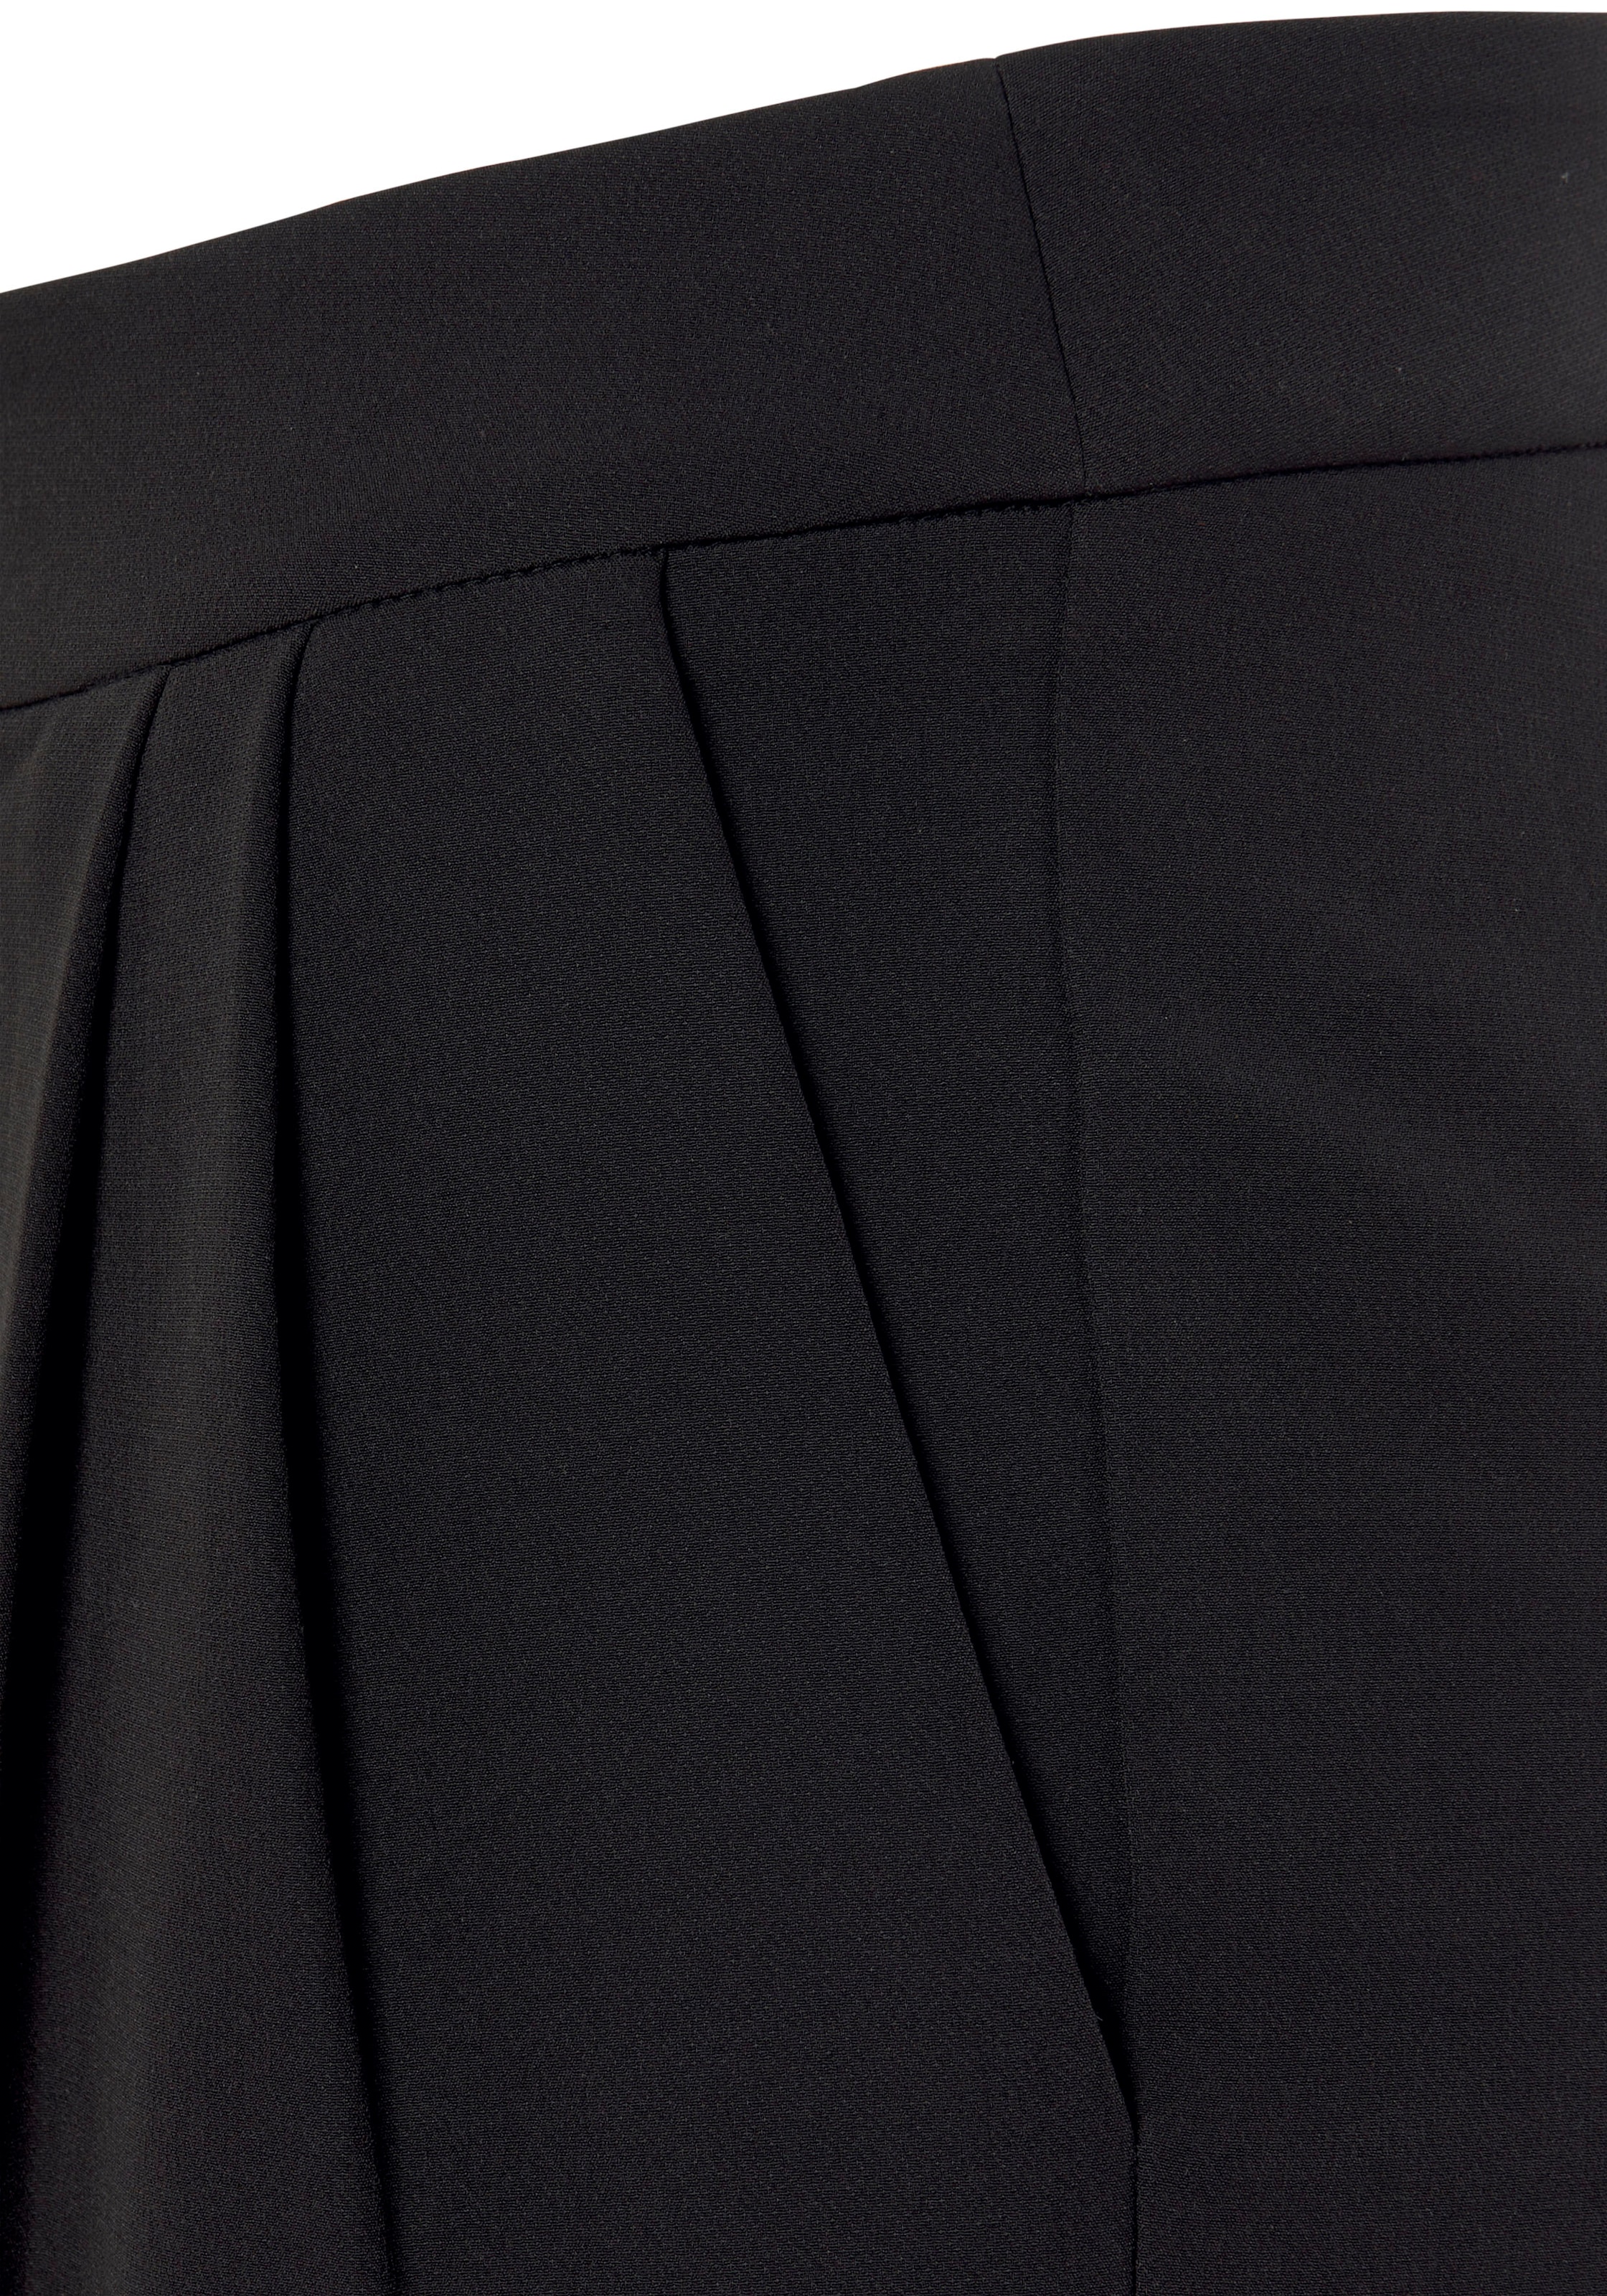 LASCANA Bügelfaltenhose, in 7/8-Länge, elegante Anzughose mit Taschen, schmale Stoffhose